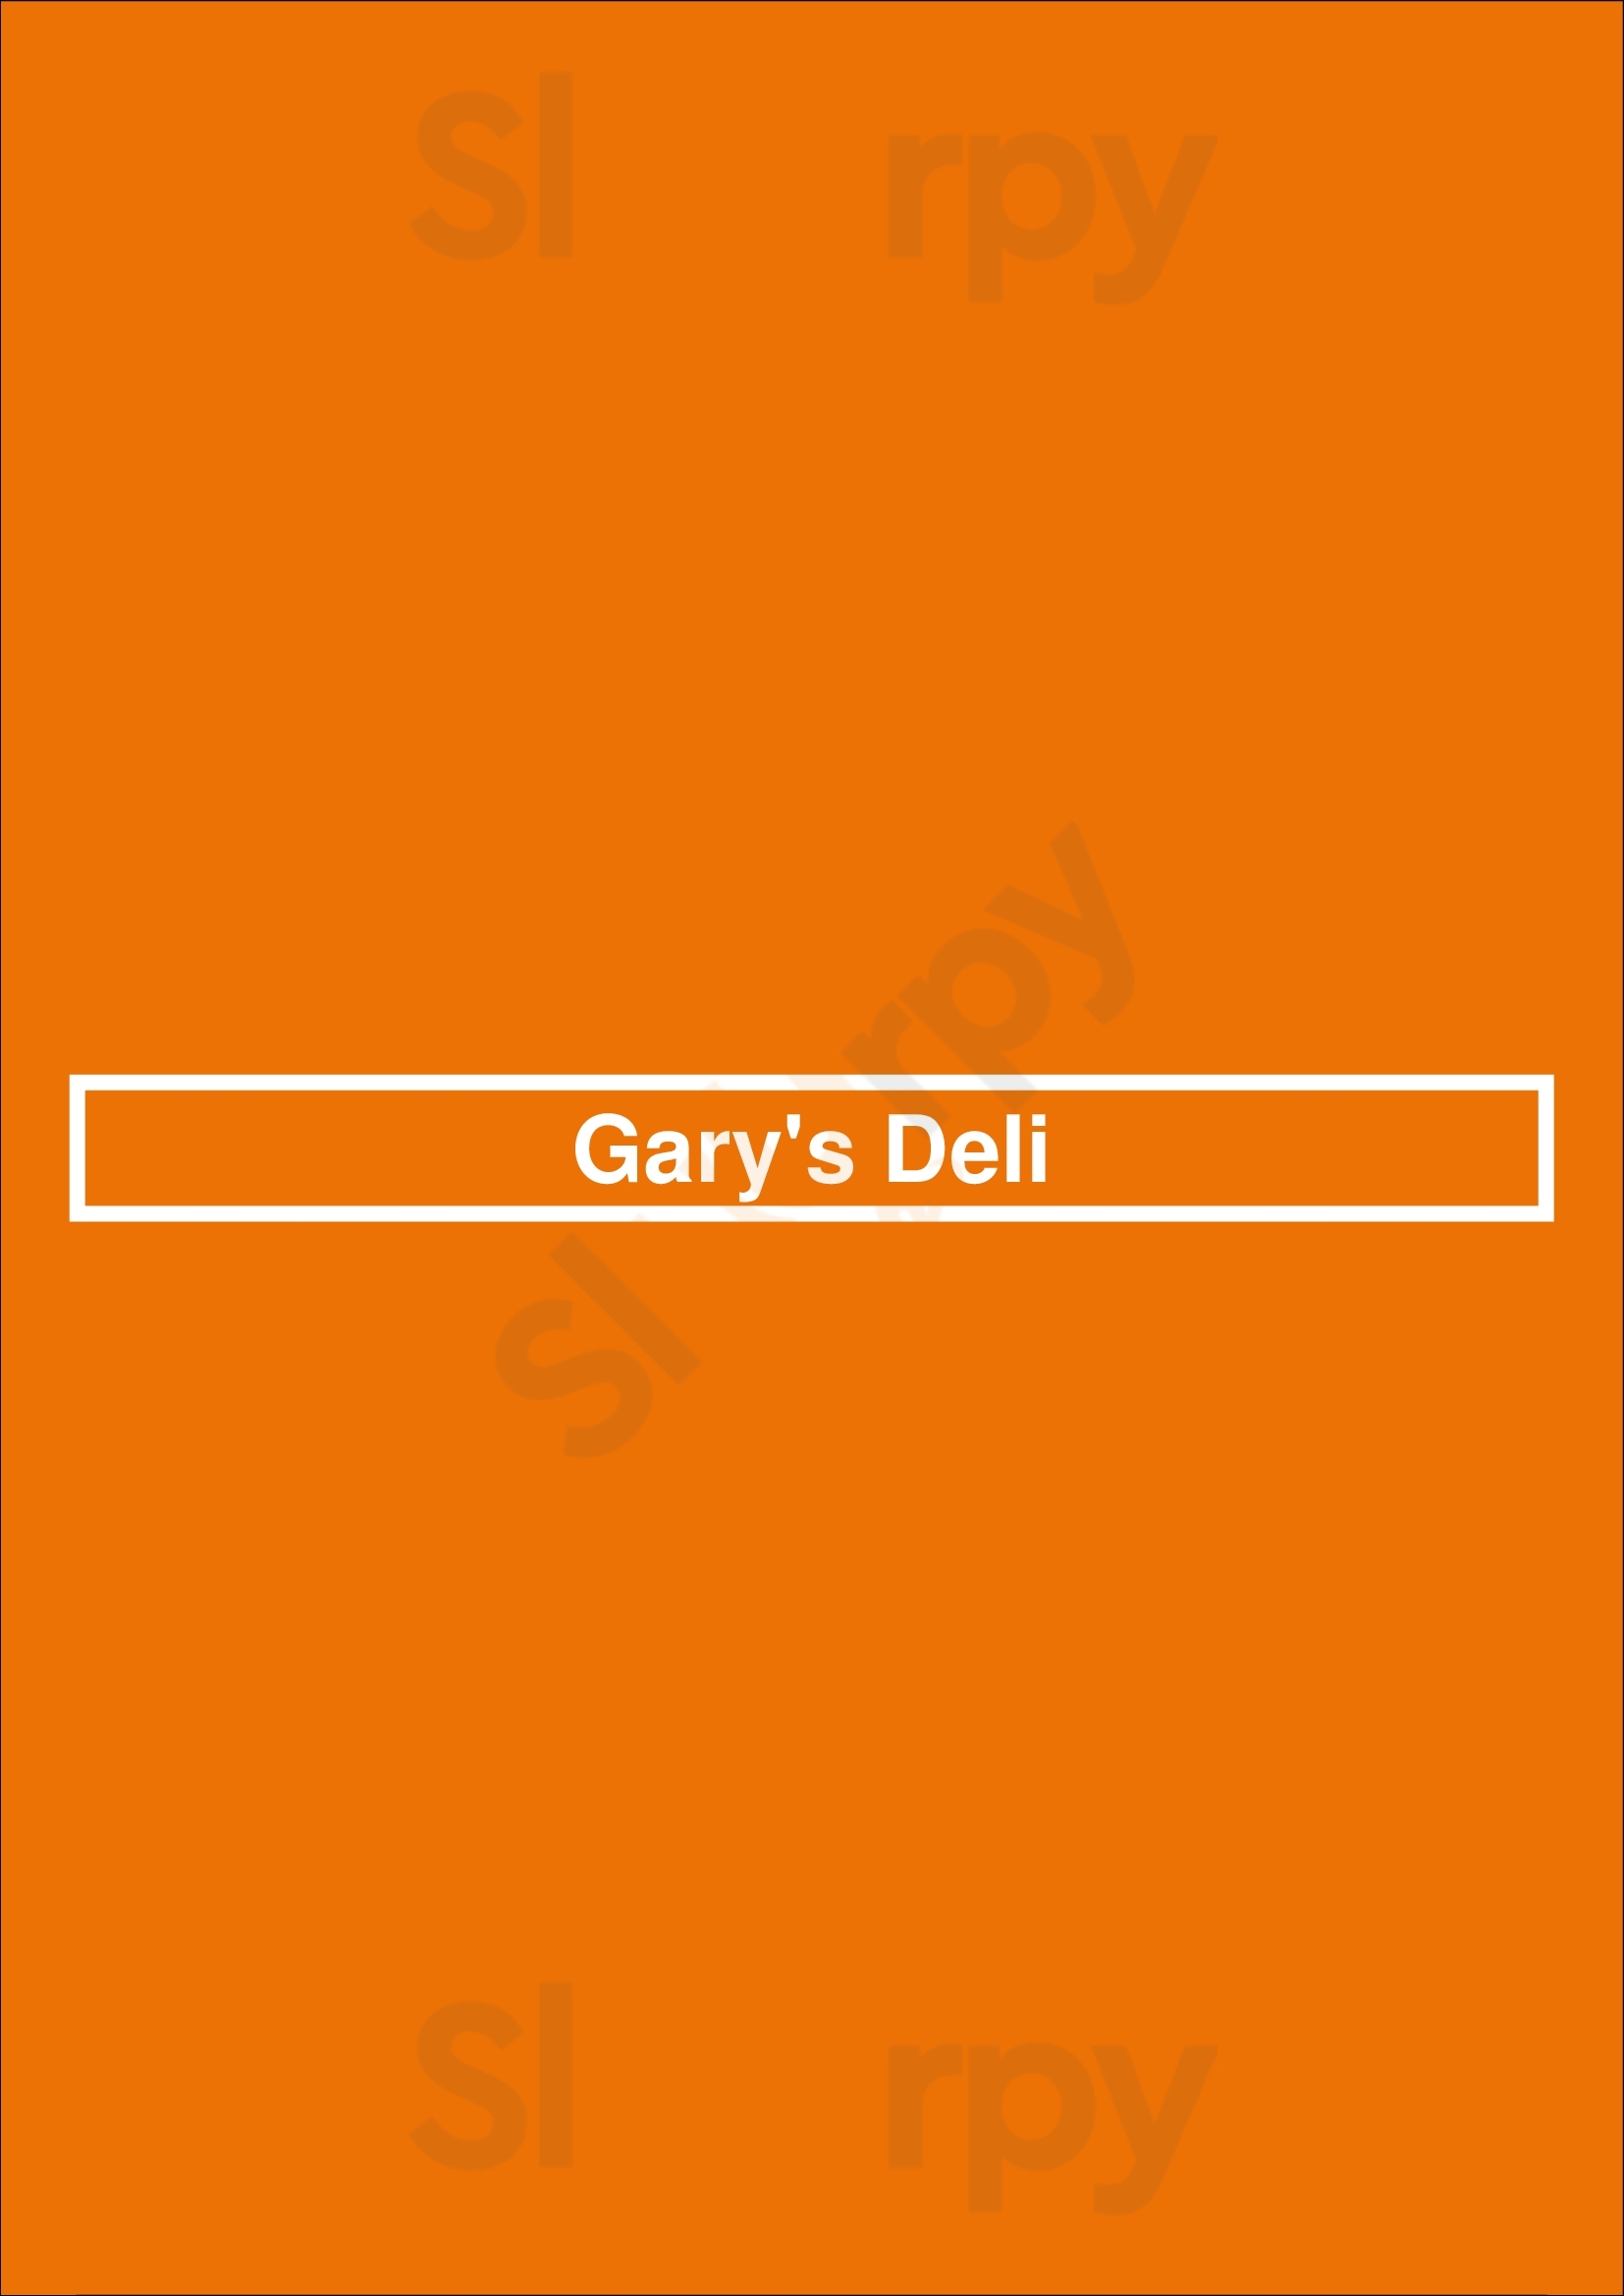 Gary's Deli Corona del Mar Menu - 1